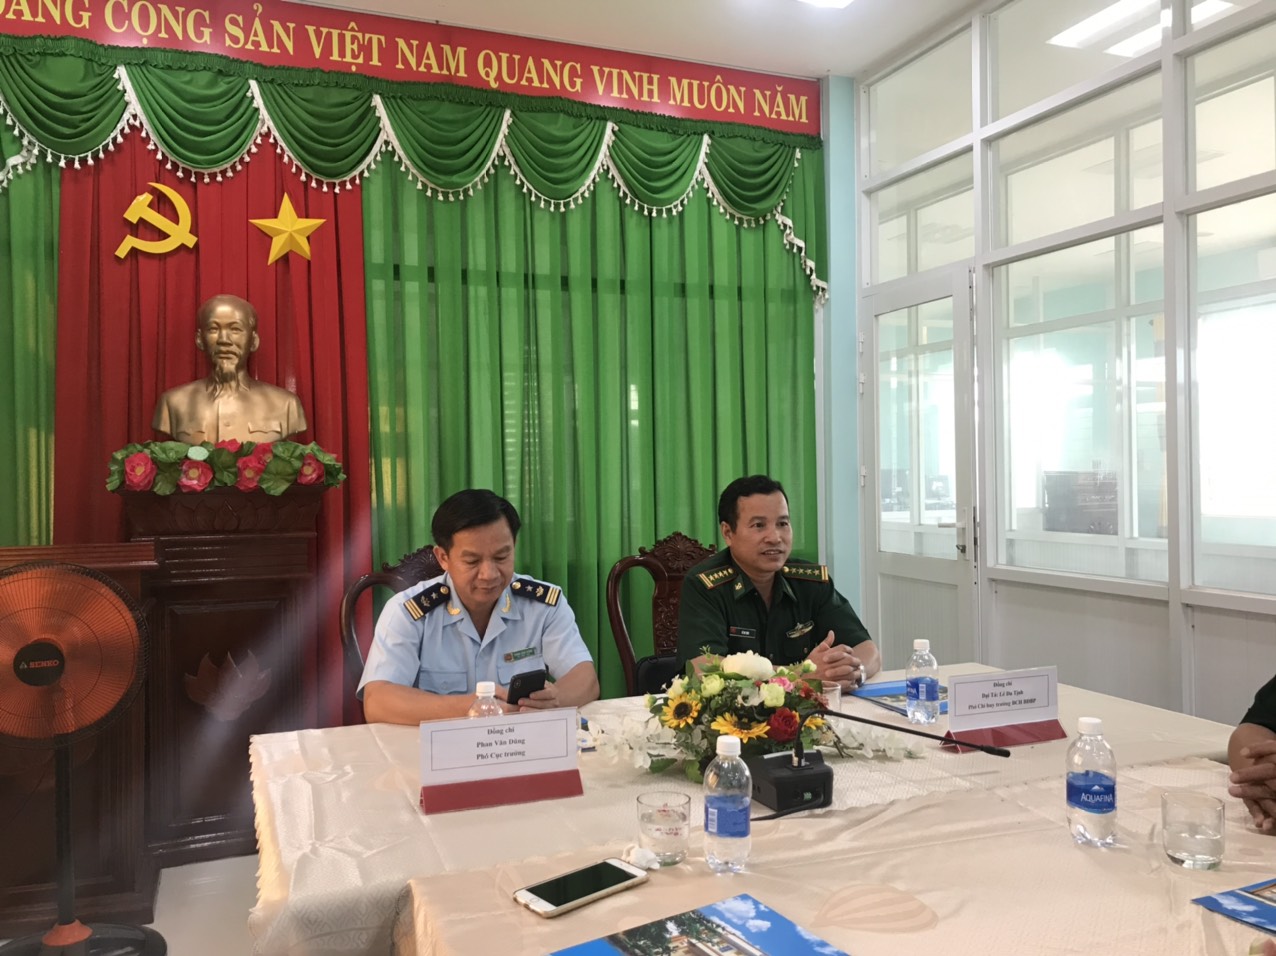 Phối hợp giữa Đội Kiểm soát Hải quan và các Đồn Biên Phòng tỉnh Bình Phước